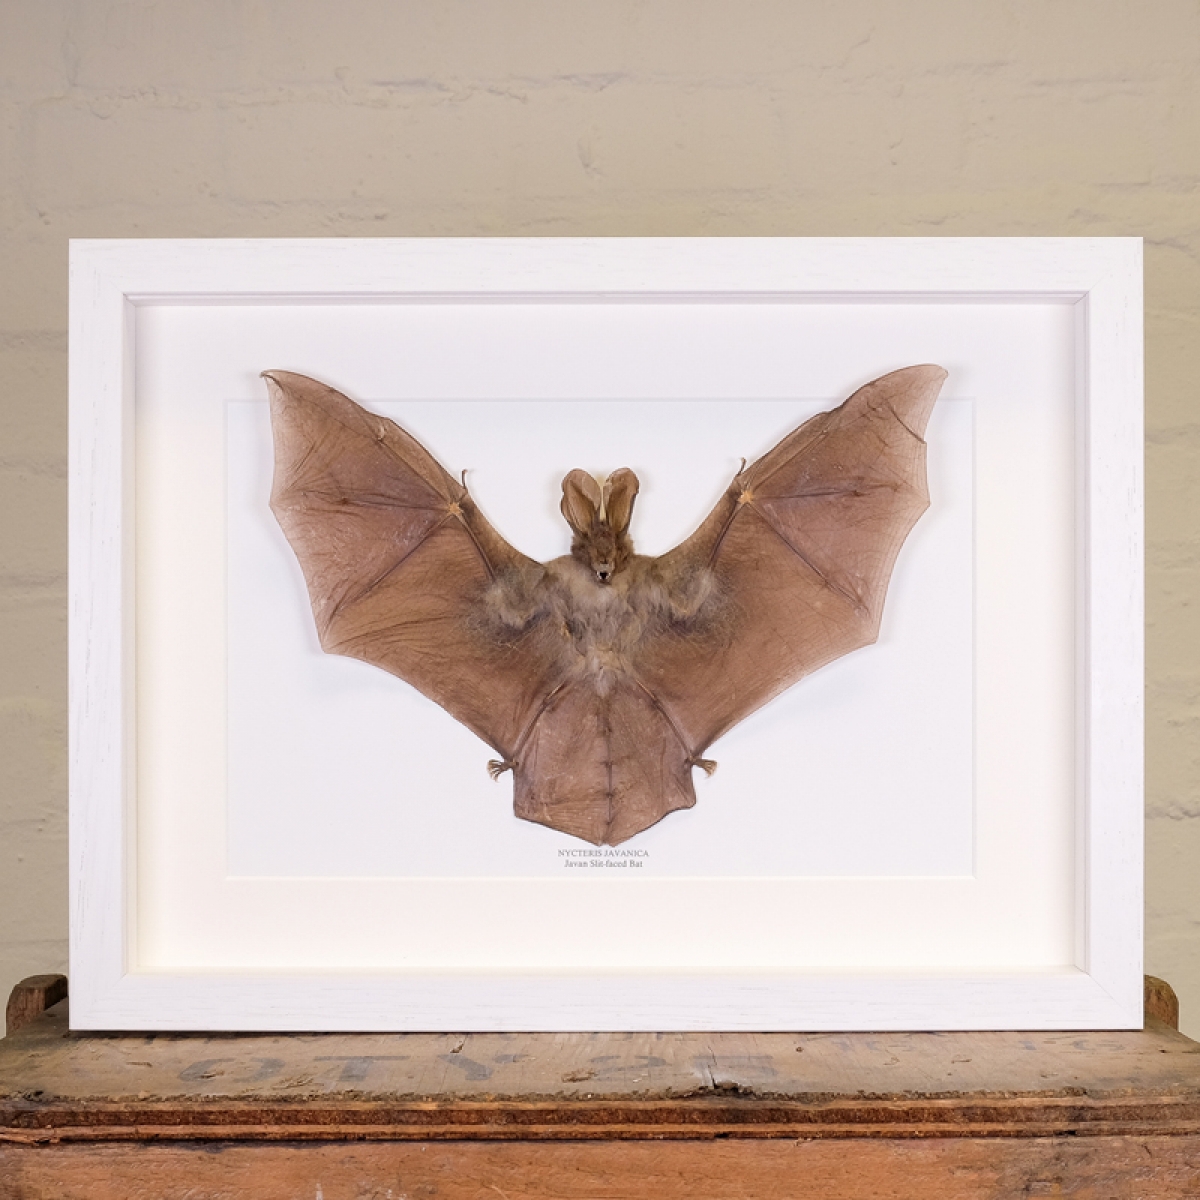 Javan Slit-faced Bat in Box Frame (Nycteris javanica)